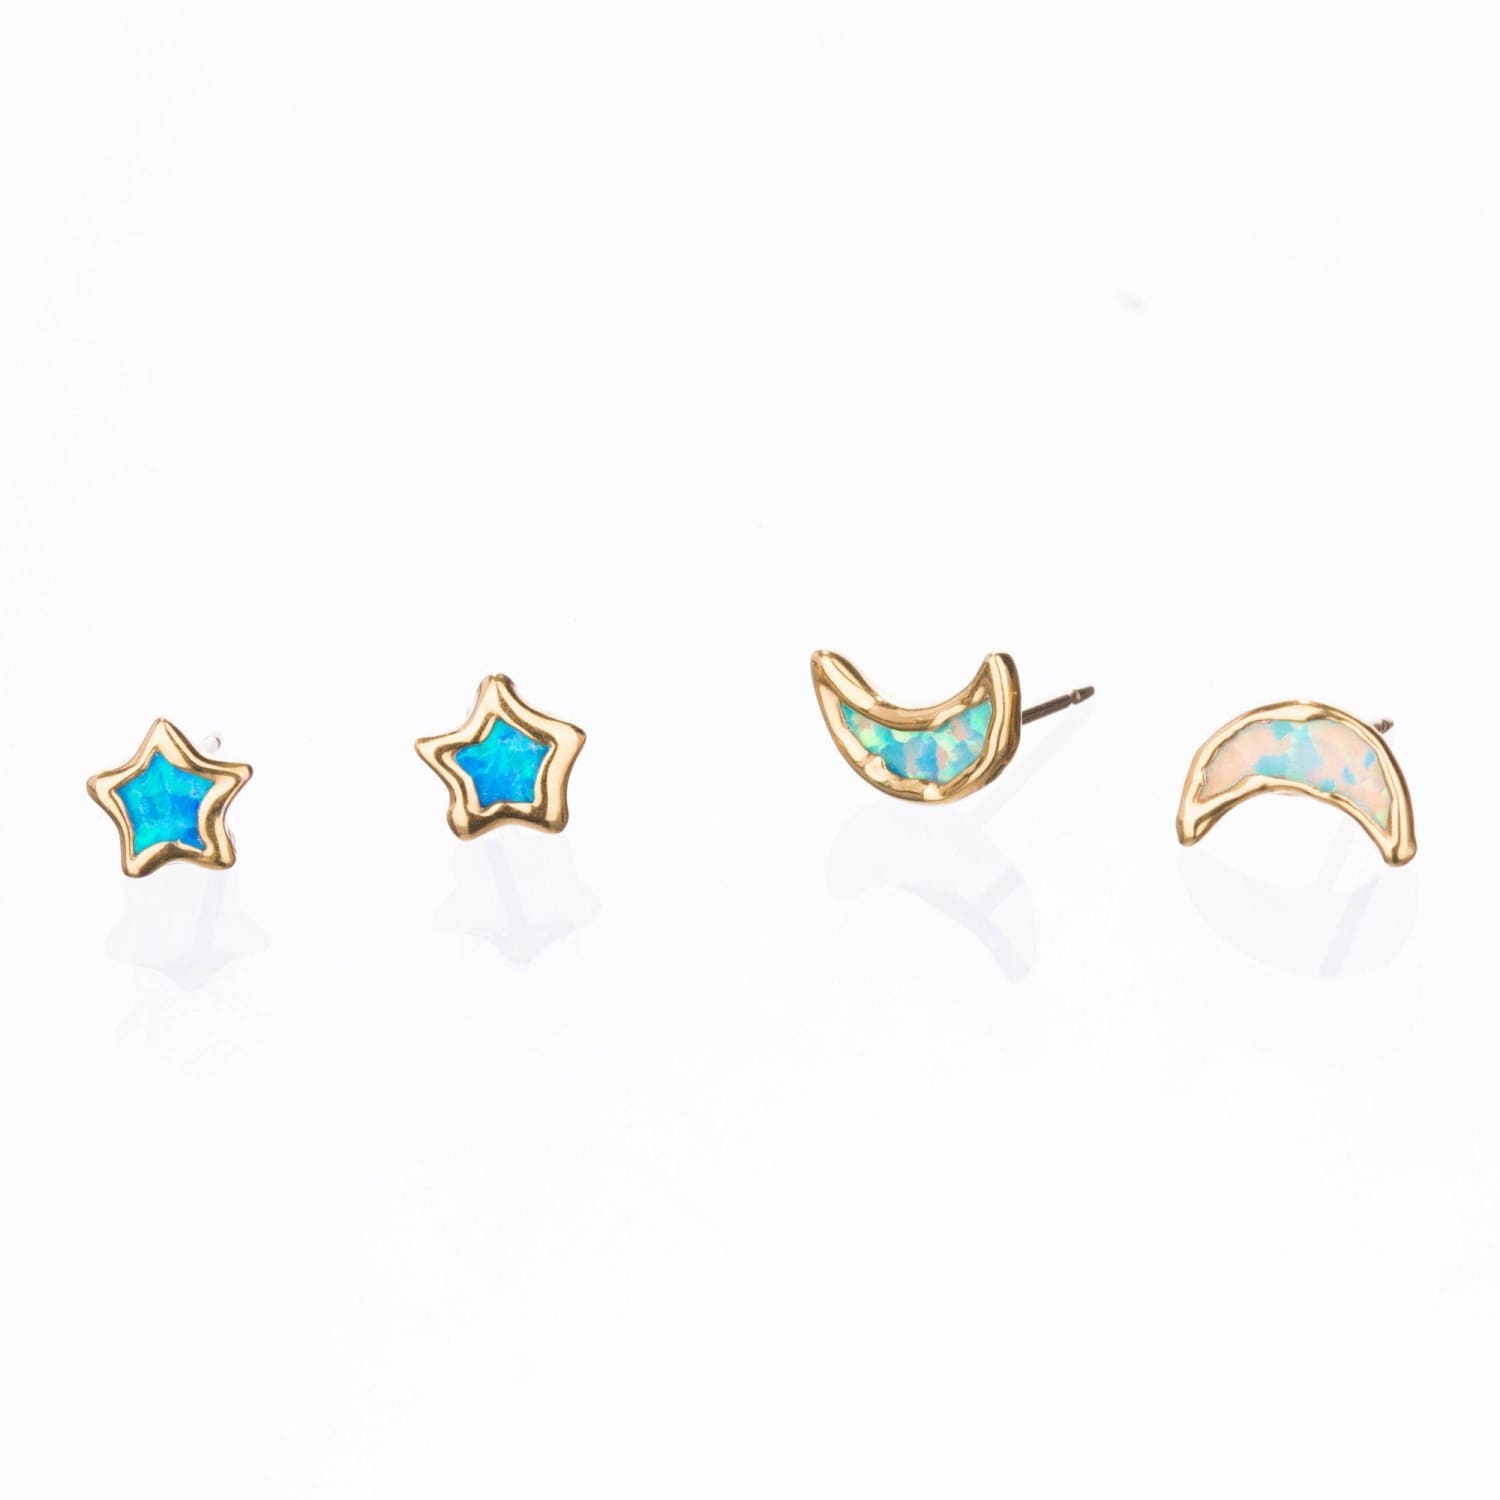 Dainty Star Kyocera Opal Stud Earrings Raw Gemstone Jewelry